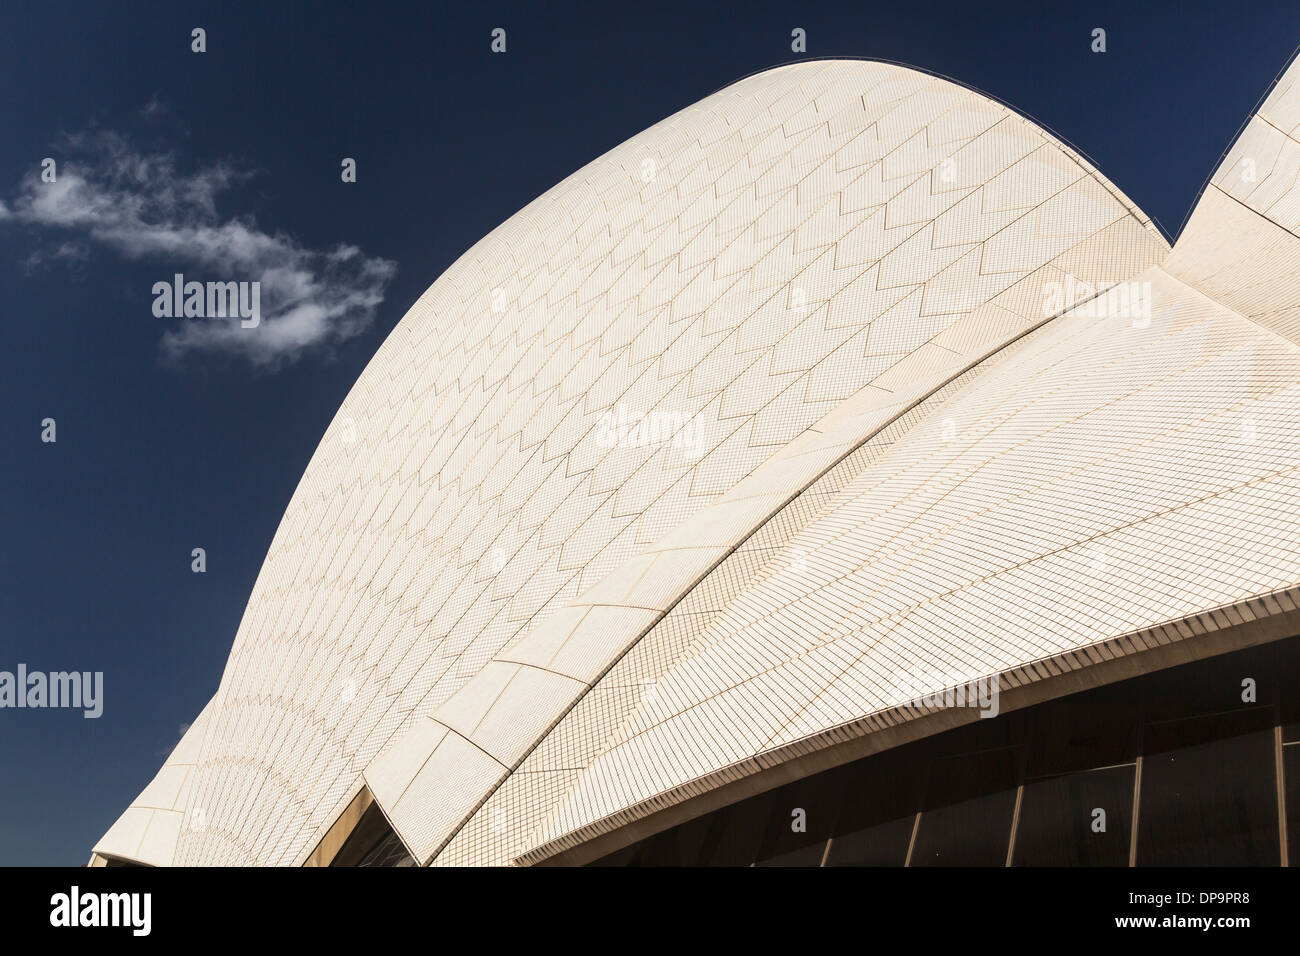 Architektonische Details der modernen Architektur Dach der Oper von Sydney, Australien Stockfoto